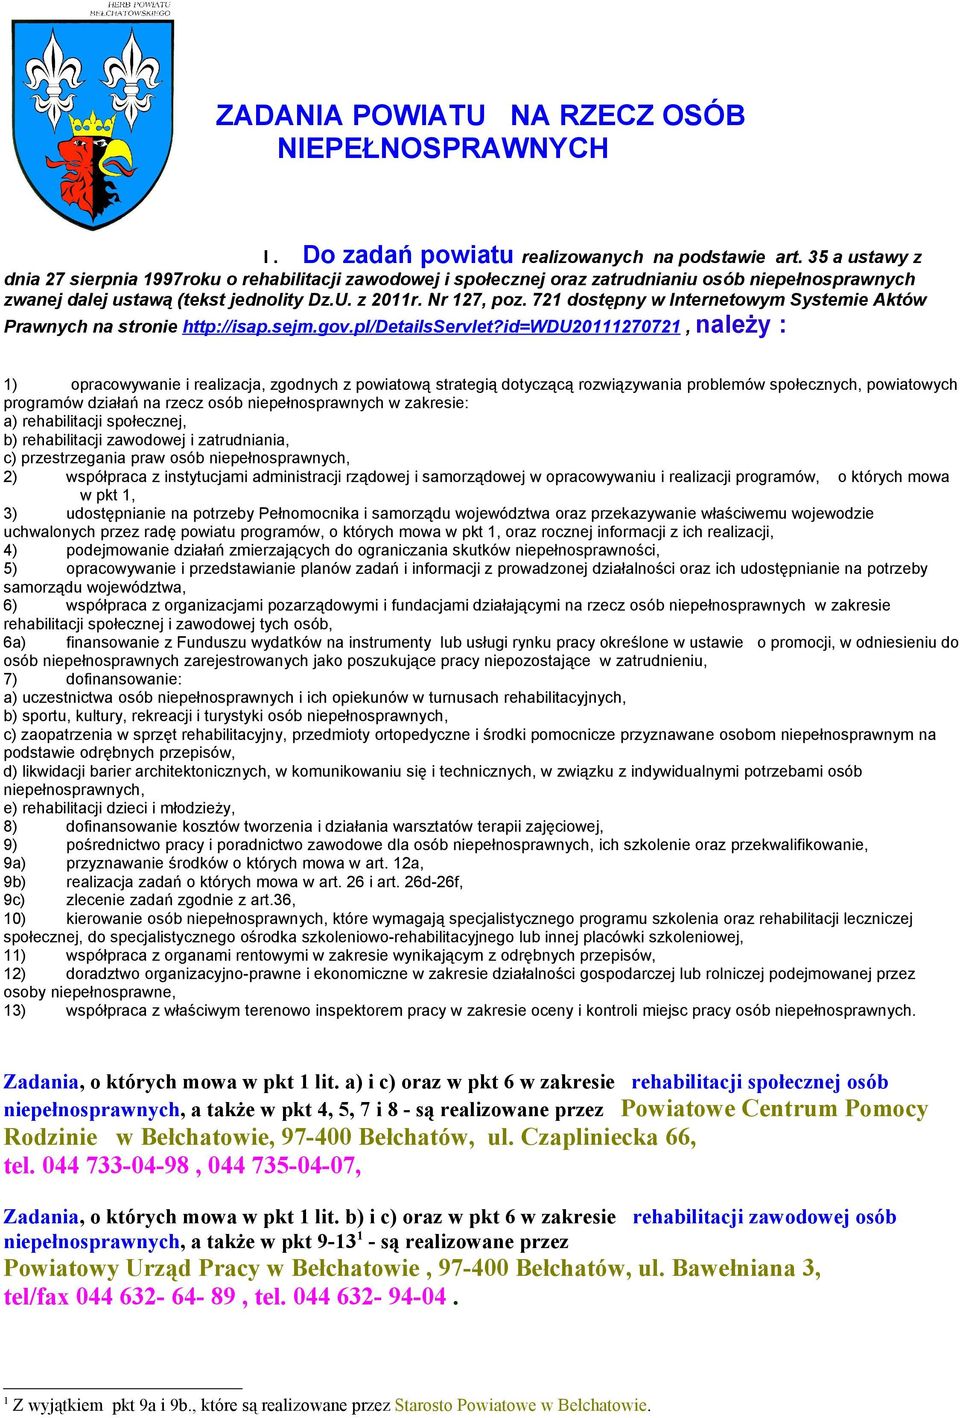 72 dostępny w Internetowym Systemie Aktów Prawnych na stronie http://isap.sejm.gov.pl/detailsservlet?